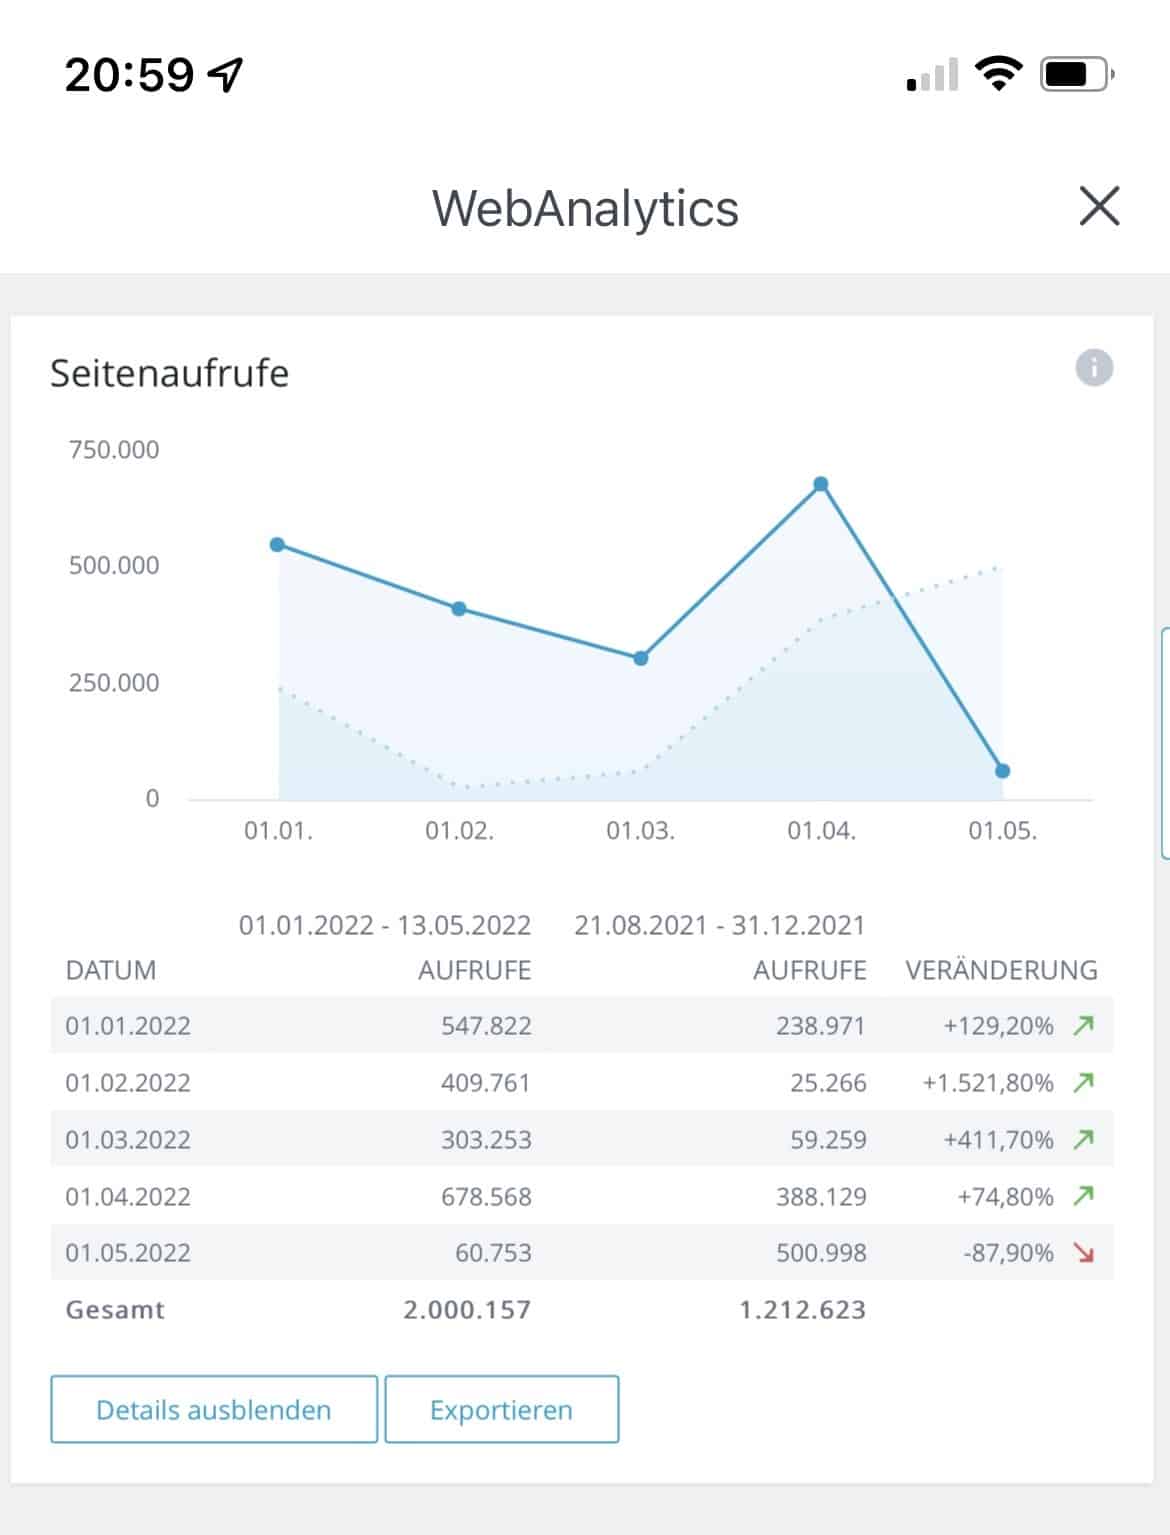 WebanAlytics mit mehr als 2 Millionen Seitenaufrufen fürs Blog 